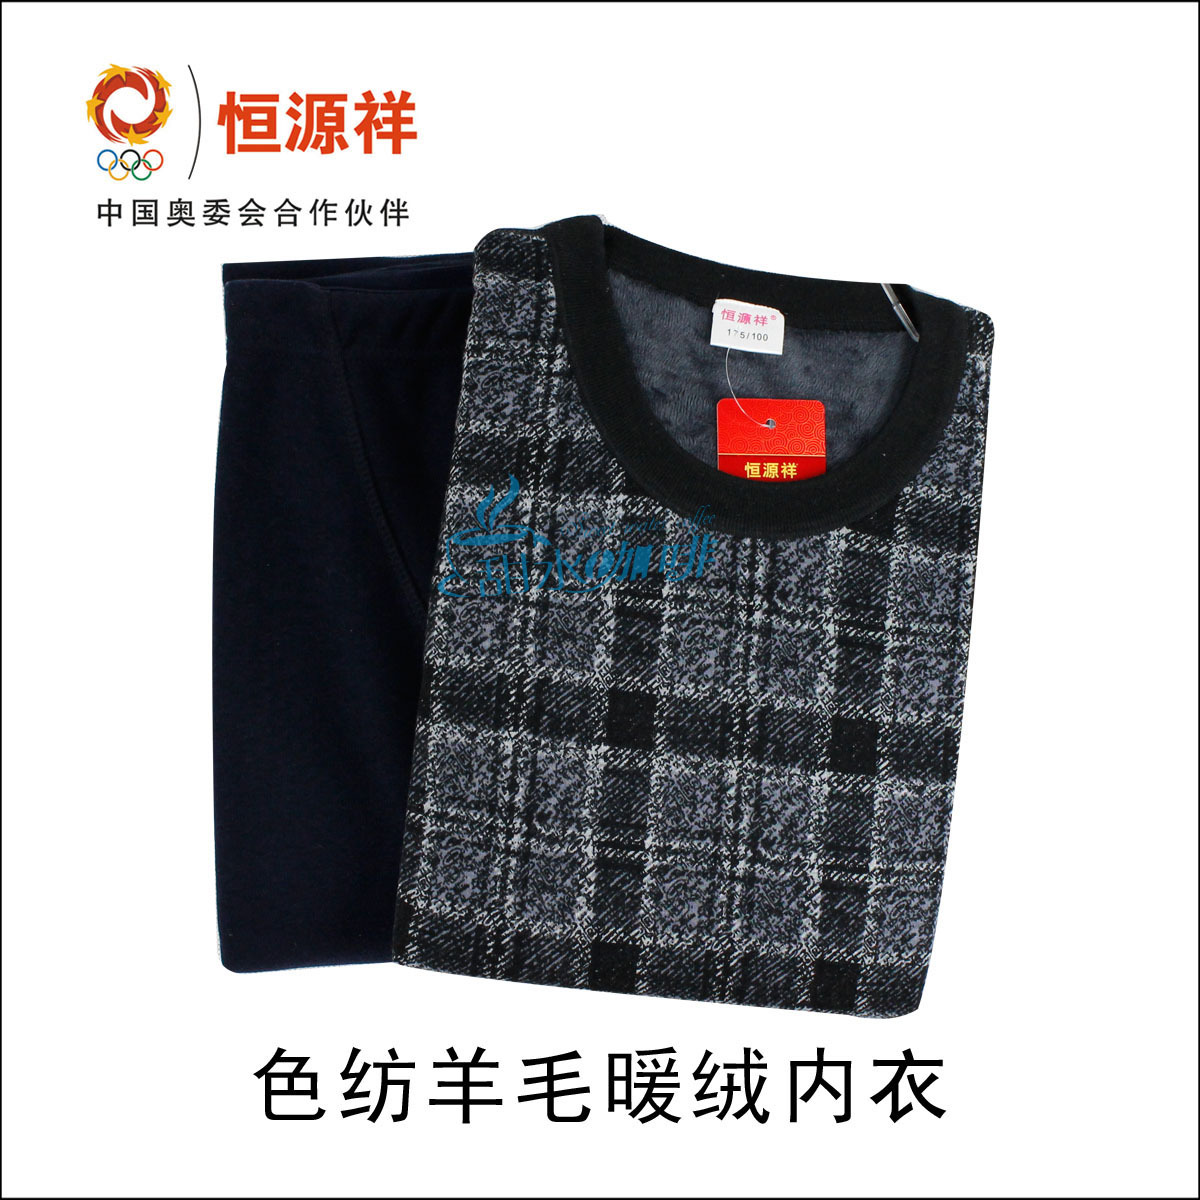 HENG YUAN XIANG wool male o-neck thermal underwear set tc-068